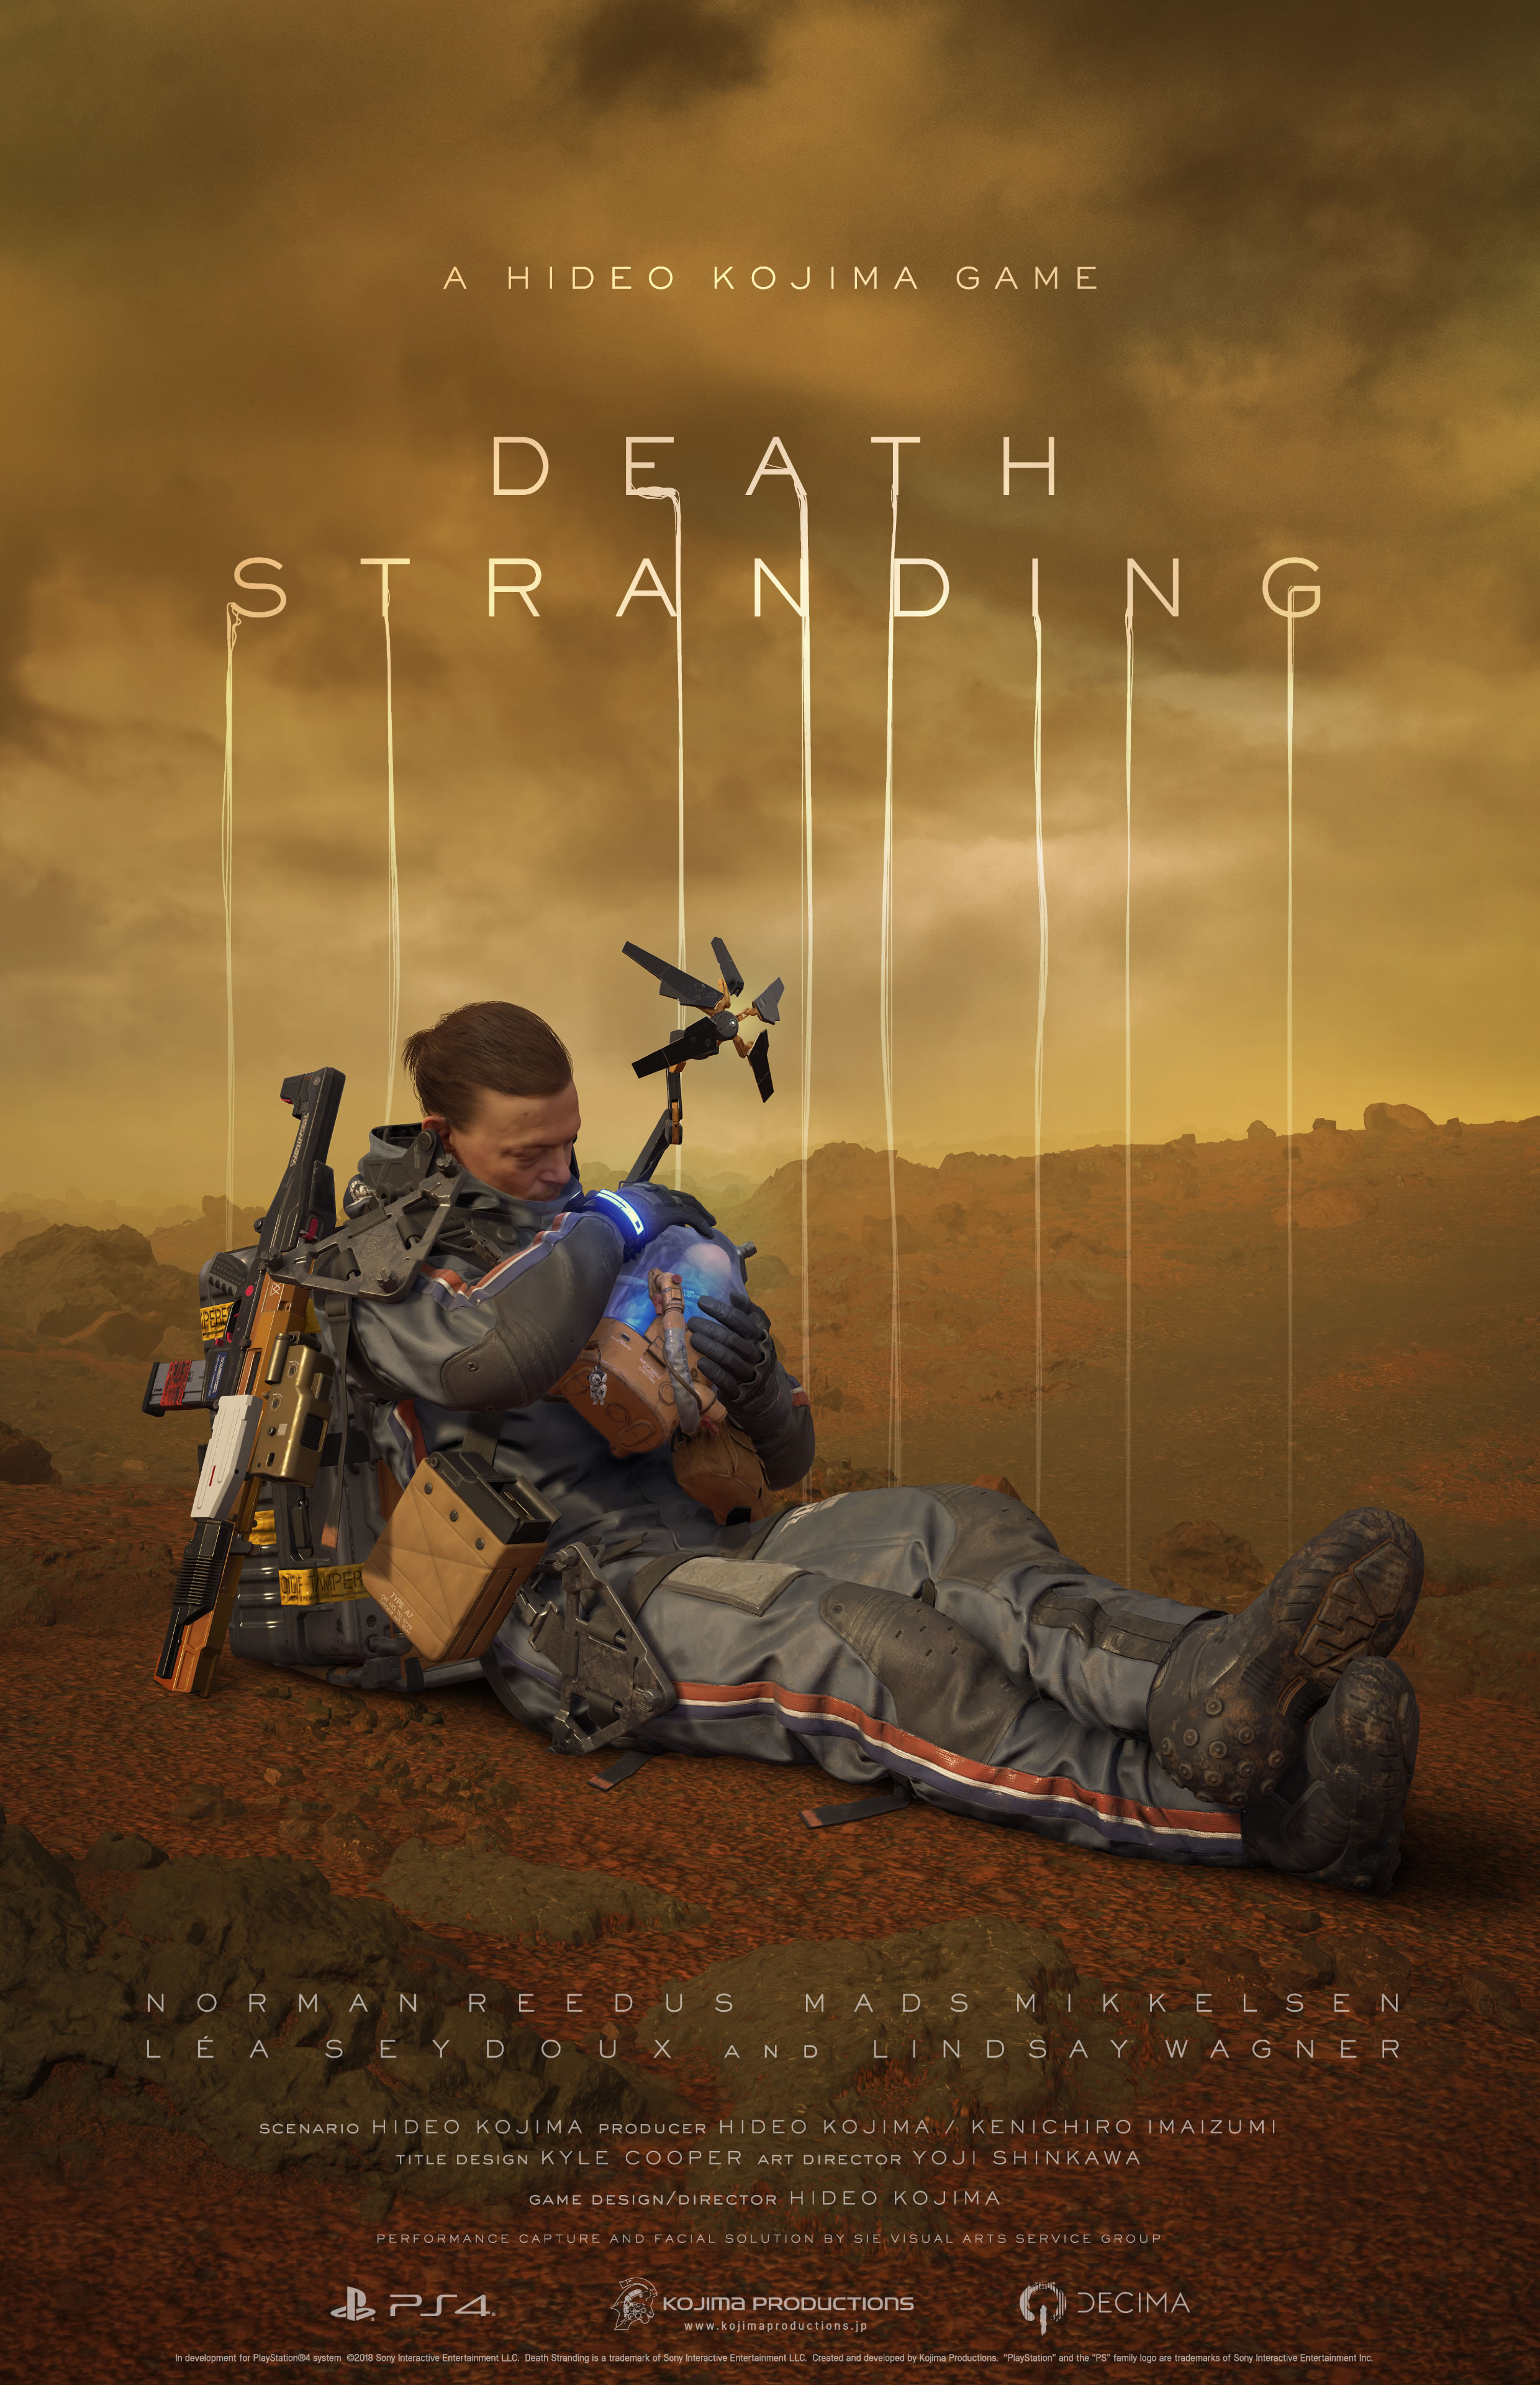 Death Stranding s’offre un nouveau trailer avec du gameplay, Léa Seydoux et Lindsay Wagner